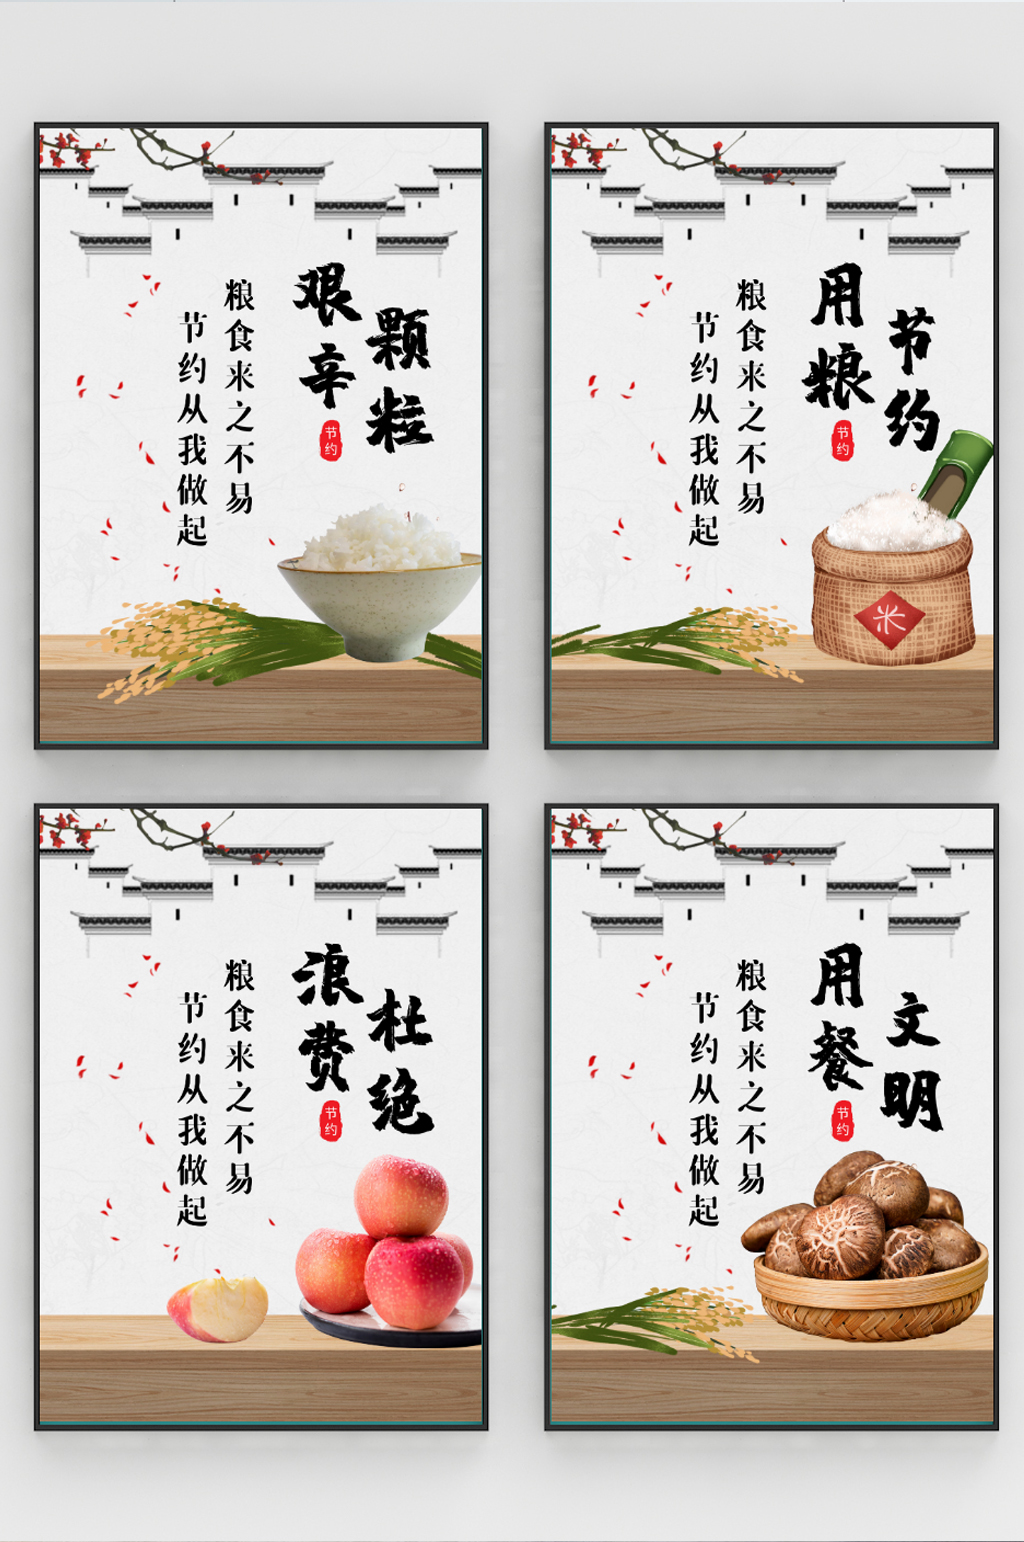 简约中国风食堂文化节约粮食公益海报